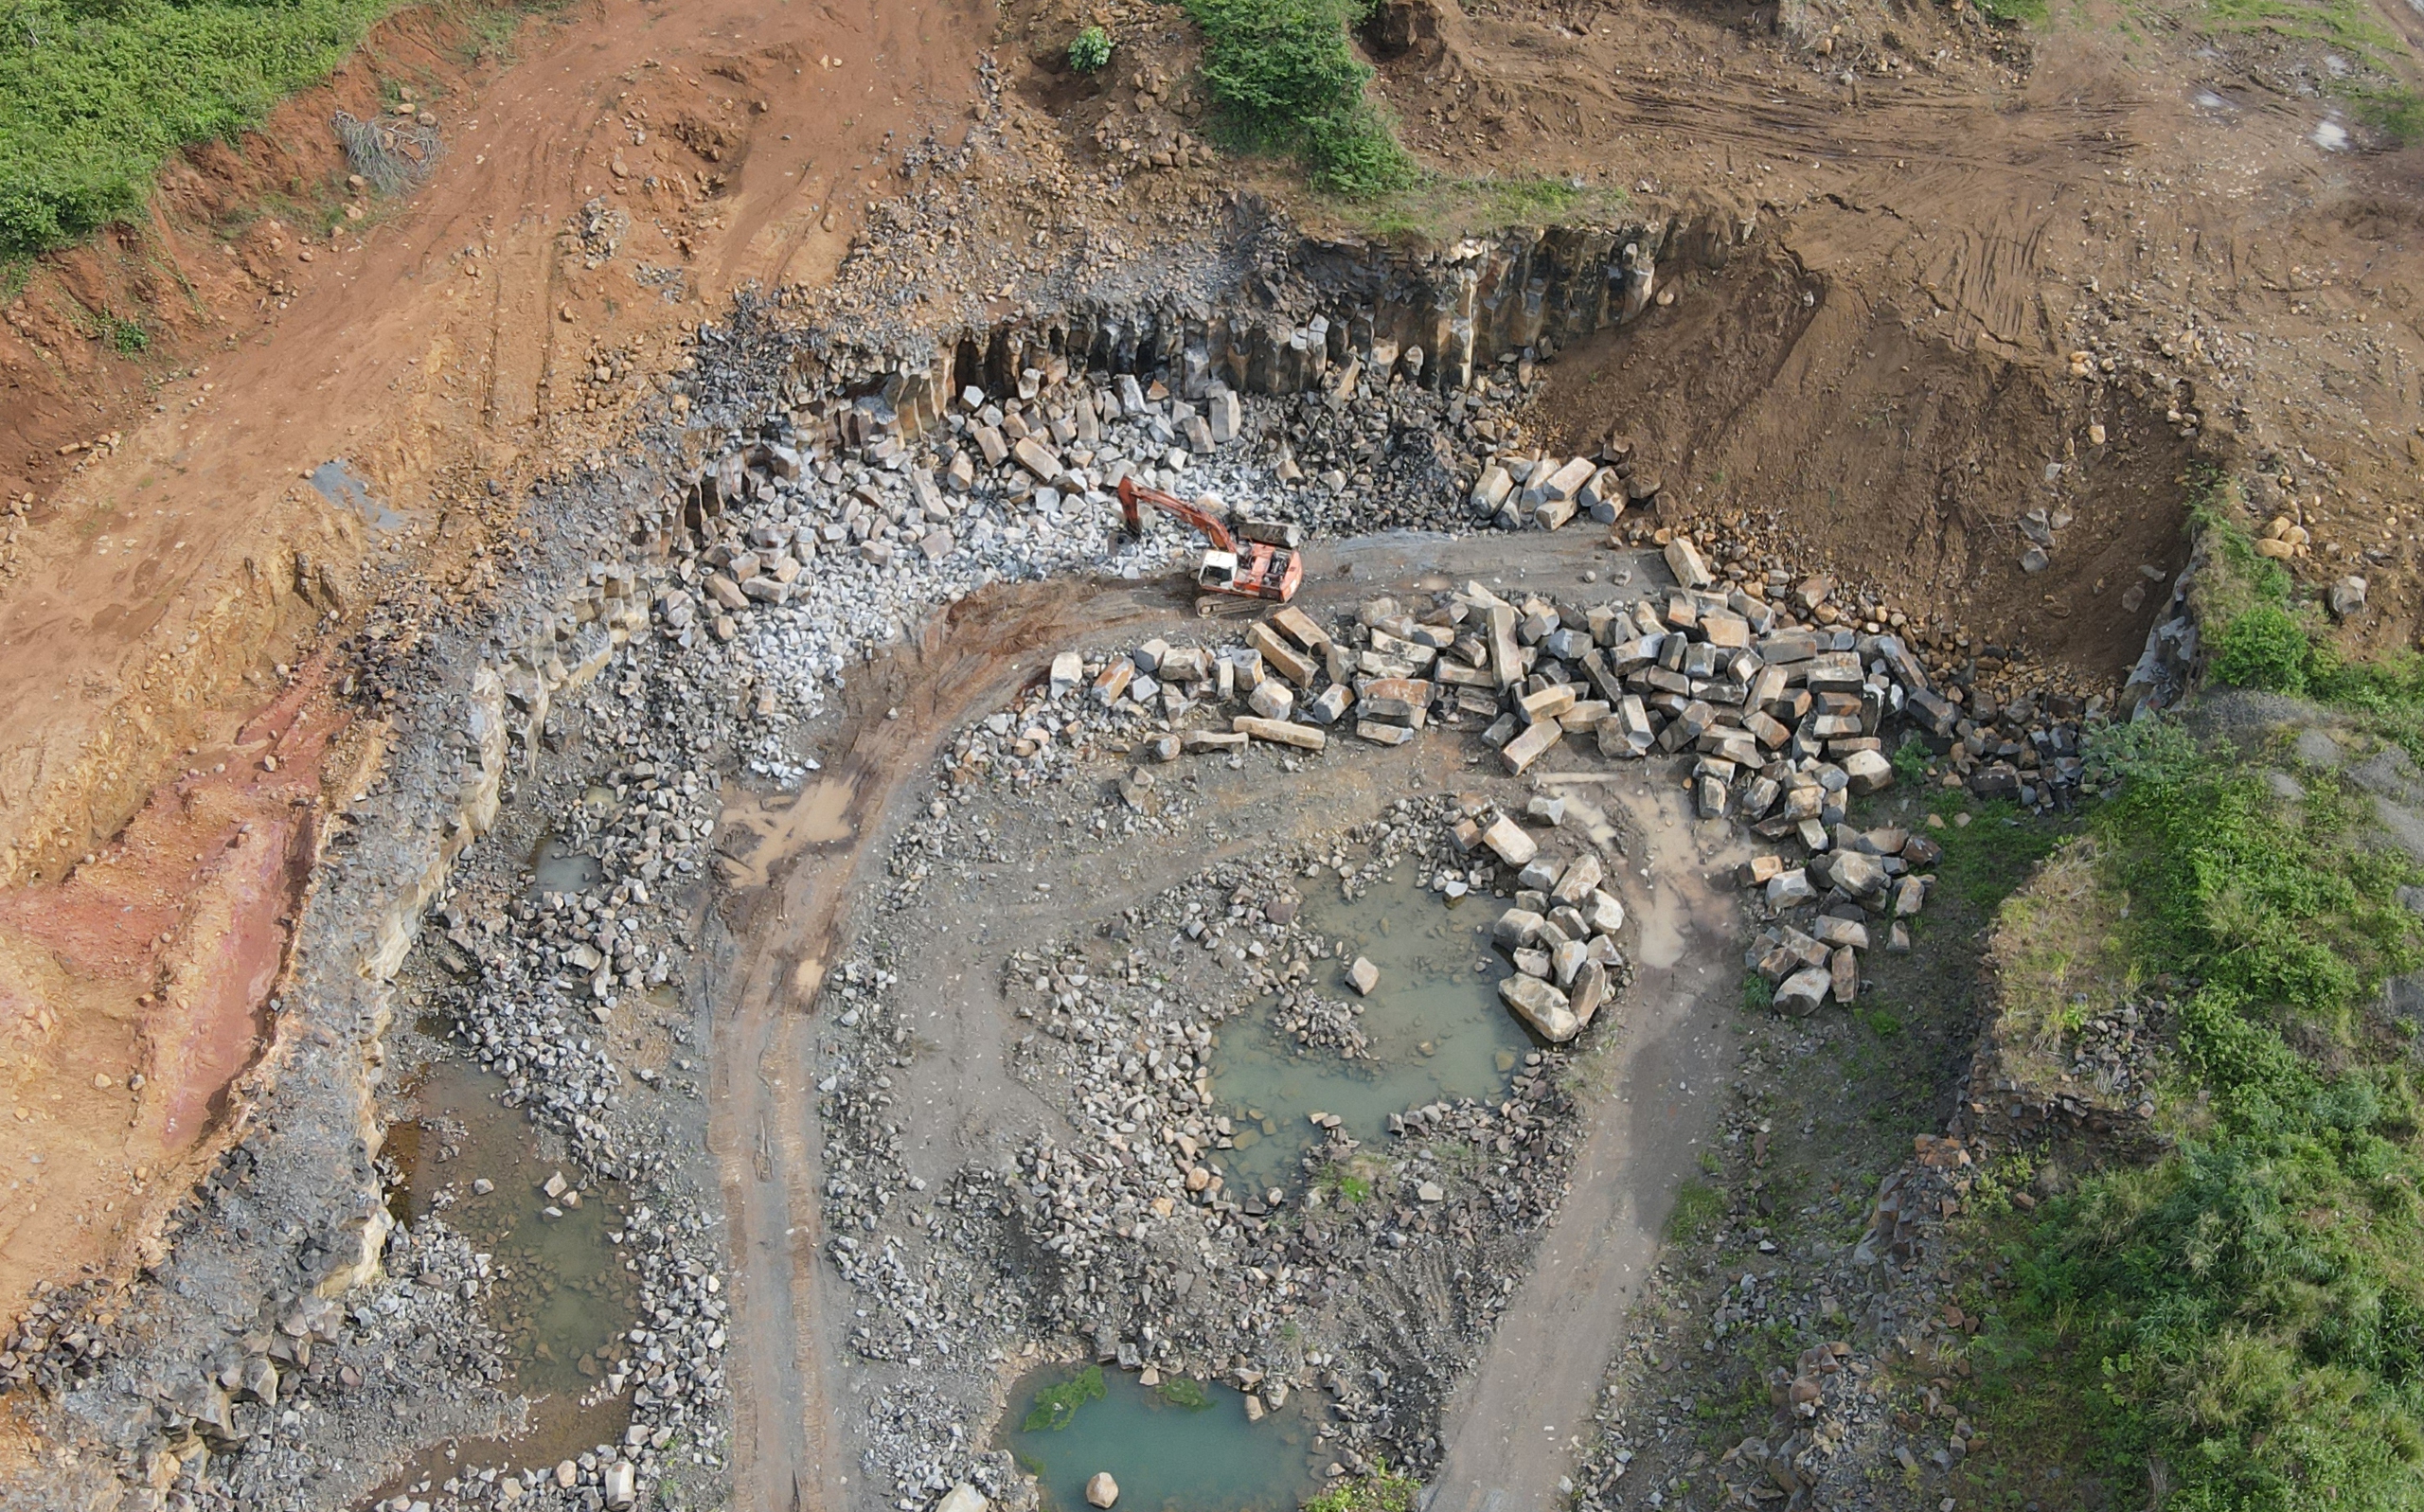 Doanh nghiệp khai thác đá cây trái phép ở Đắk Nông từng bị xử lý vẫn tái phạm - Ảnh 1.